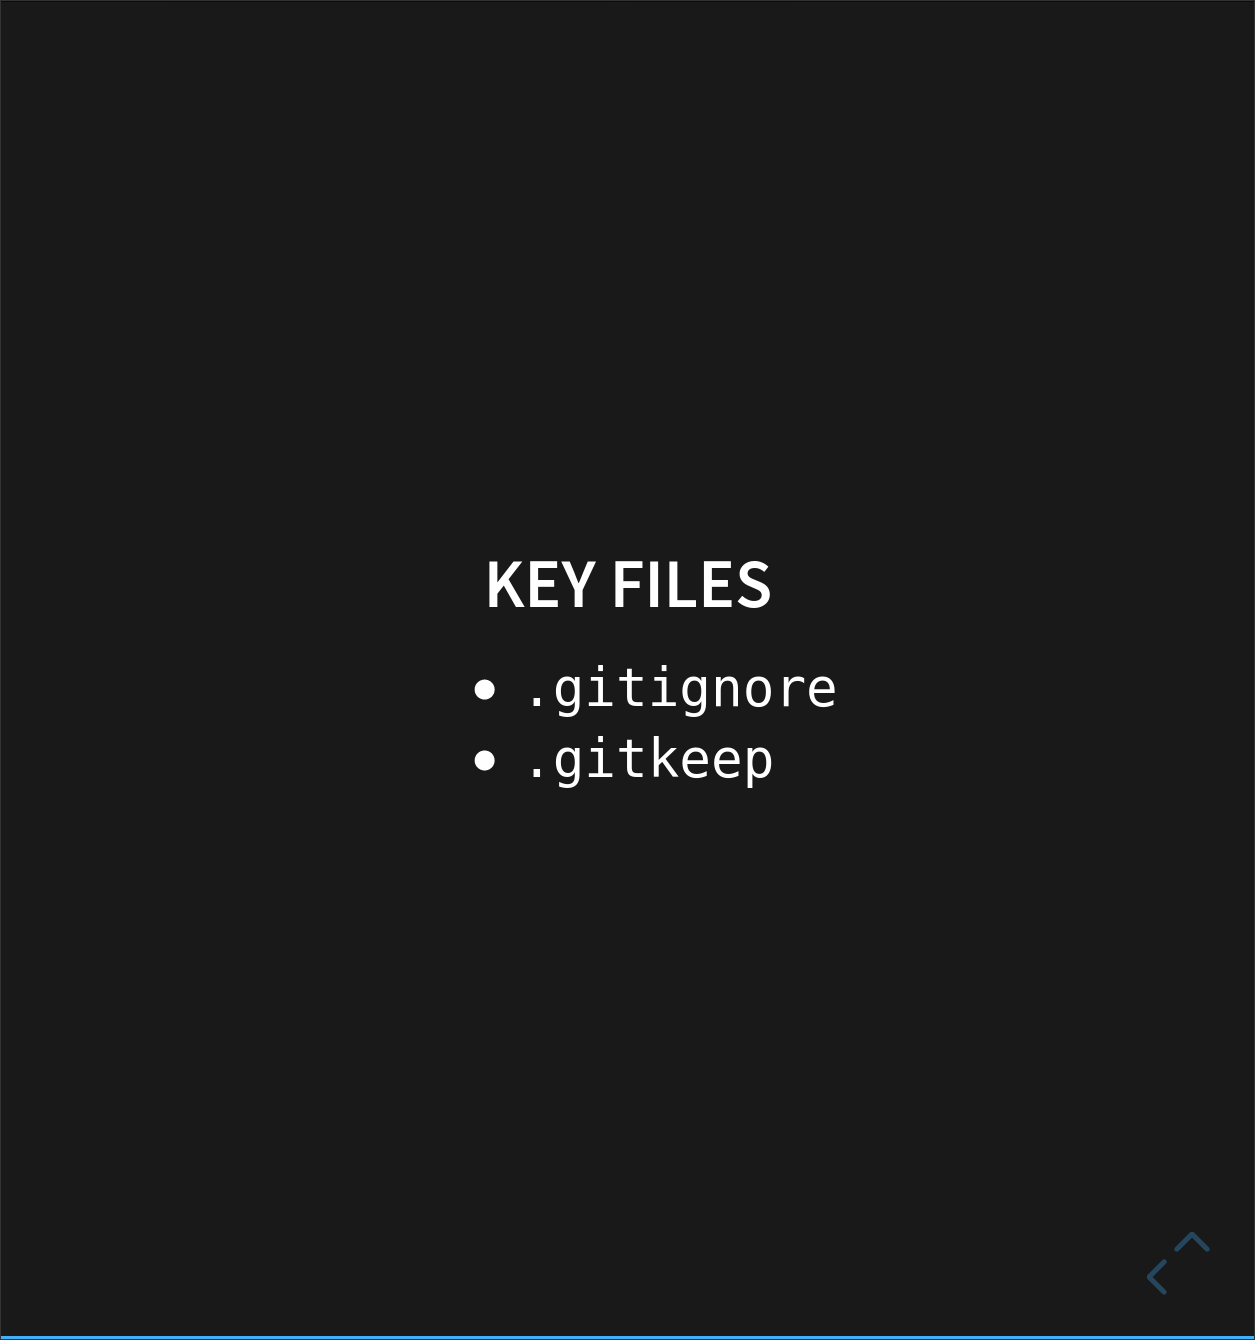 Key files